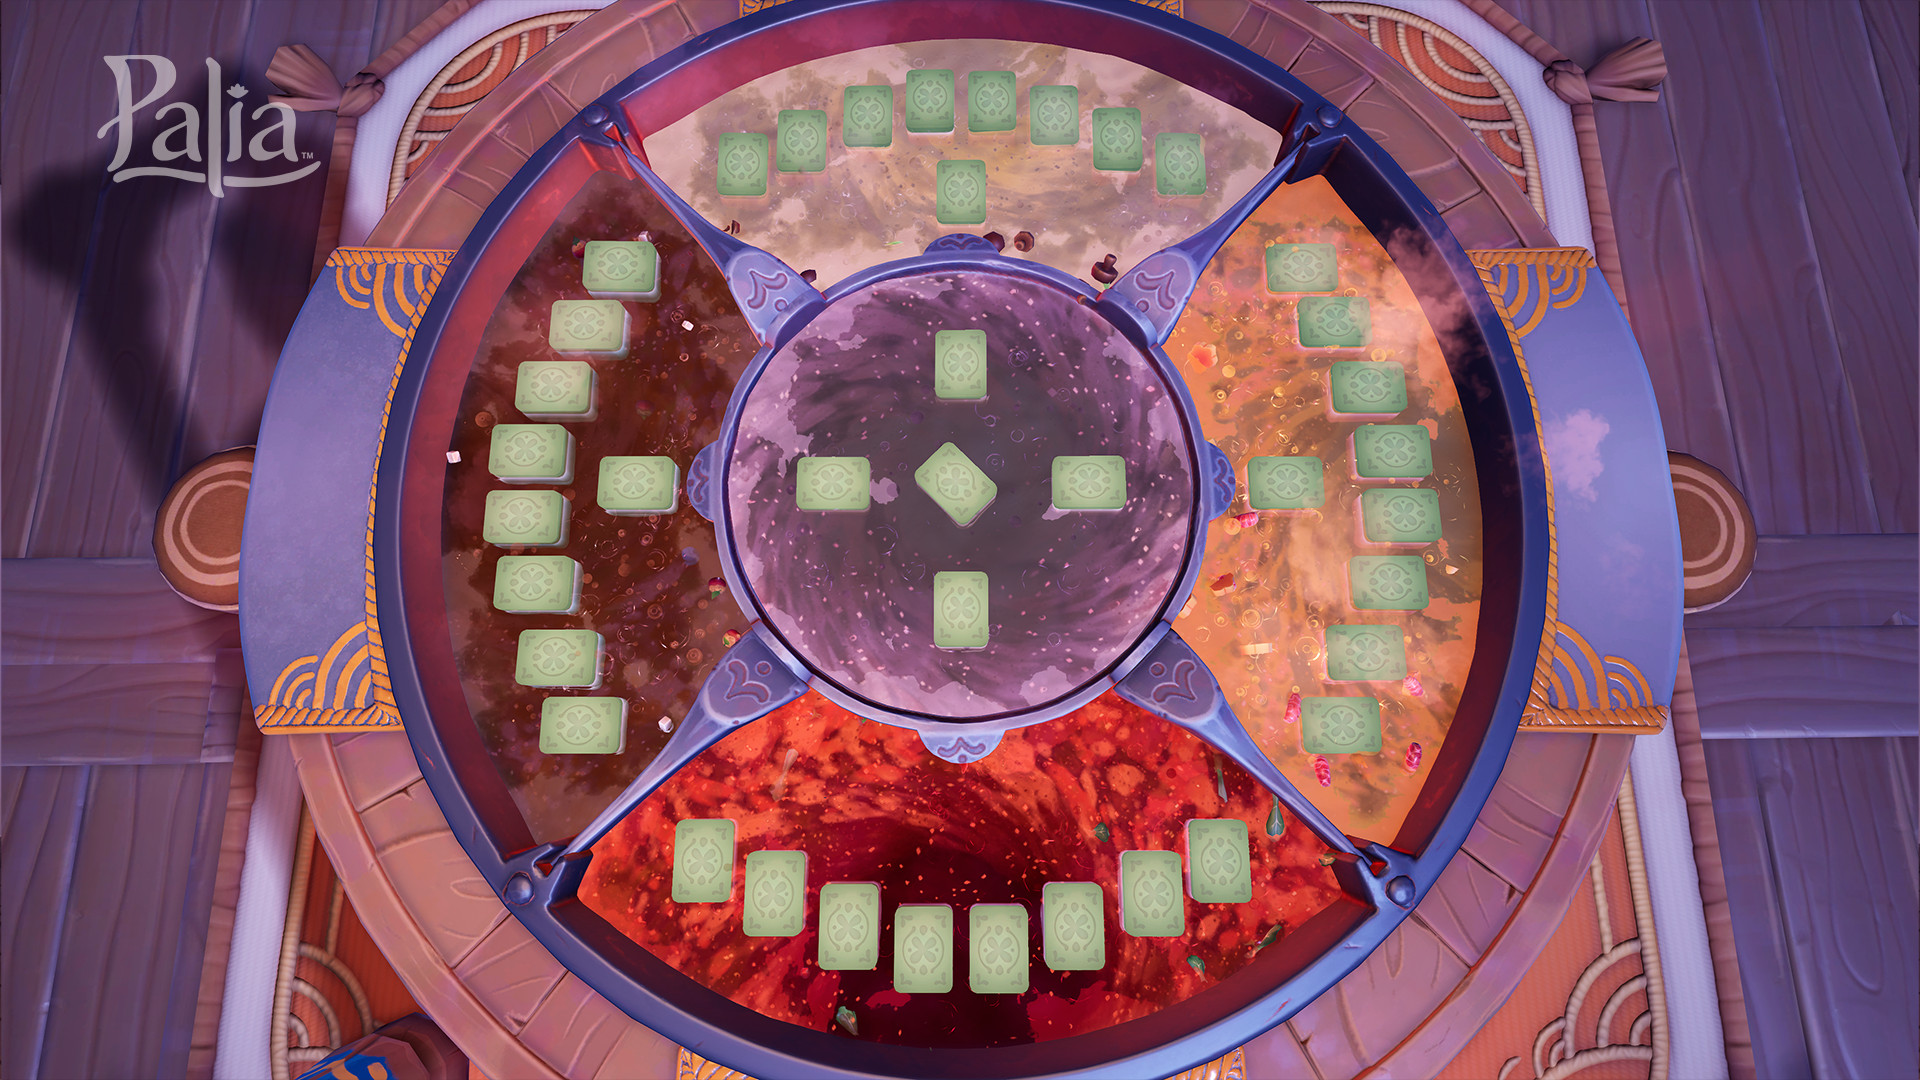 Обзор игры в Hotpot Card Game в Палиа, с готовящимся в огромном горшке кипящим супом плывущими плитками в стиле Маджонг.